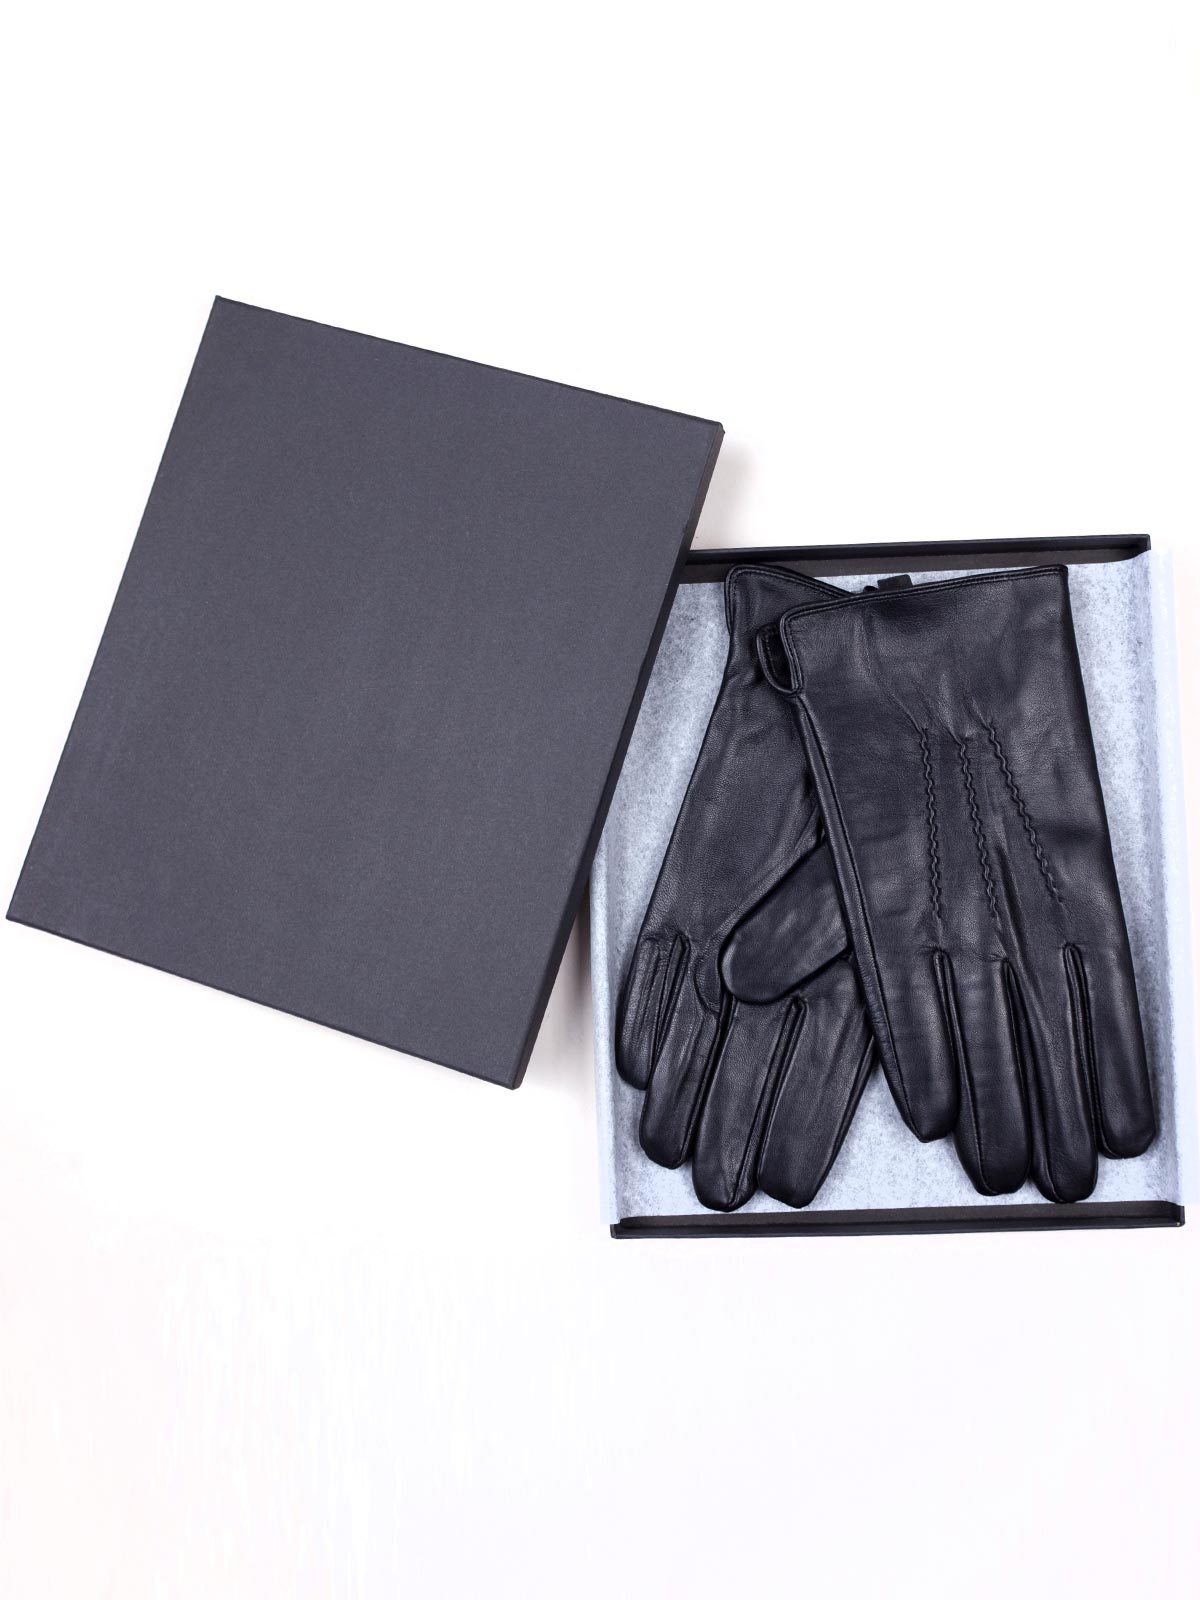  δερμάτινα γάντια με διακοσμητικές ραφές - 10573 - € 31.50 img3